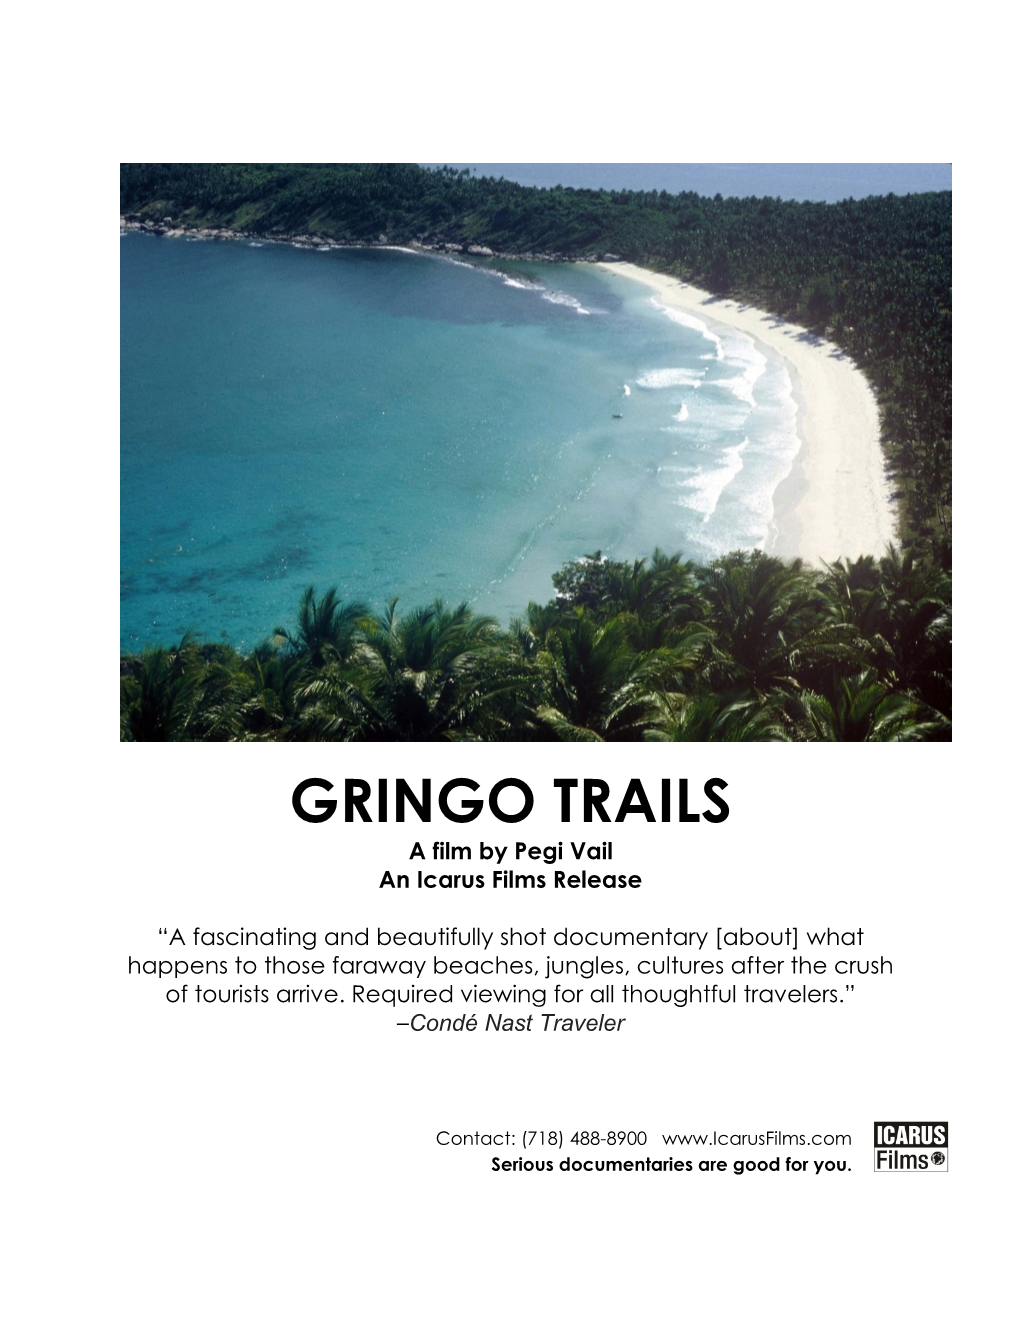 “Gringo Trails”: Tourism Trap